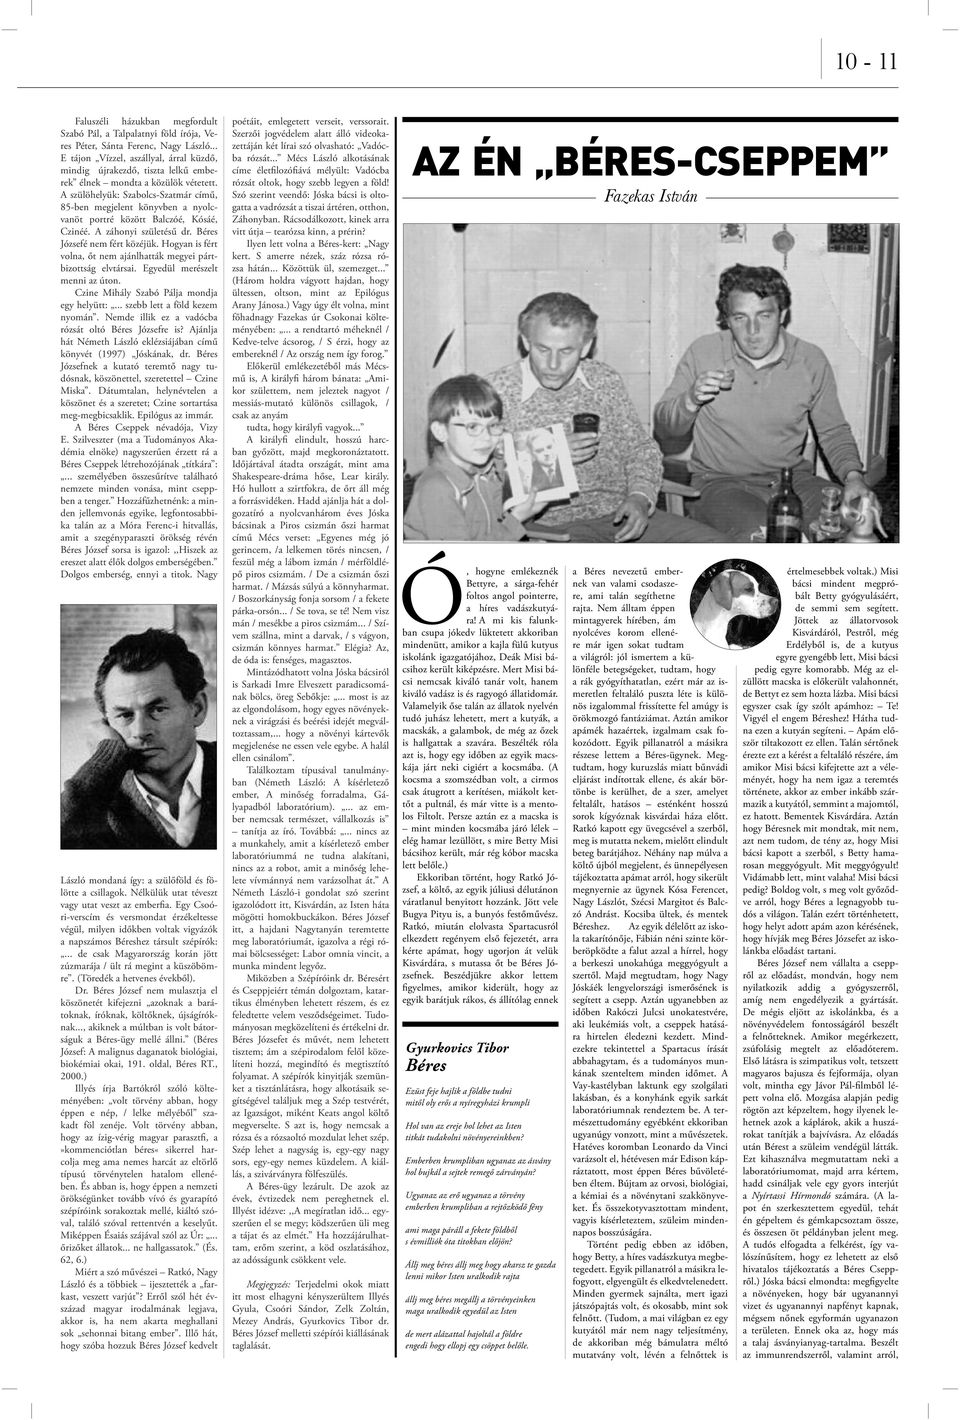 A szülöhelyük: Szabolcs-Szatmár című, 85-ben megjelent könyvben a nyolcvanöt portré között Balczóé, Kósáé, Czinéé. A záhonyi születésű dr. Béres Józsefé nem fért közéjük.